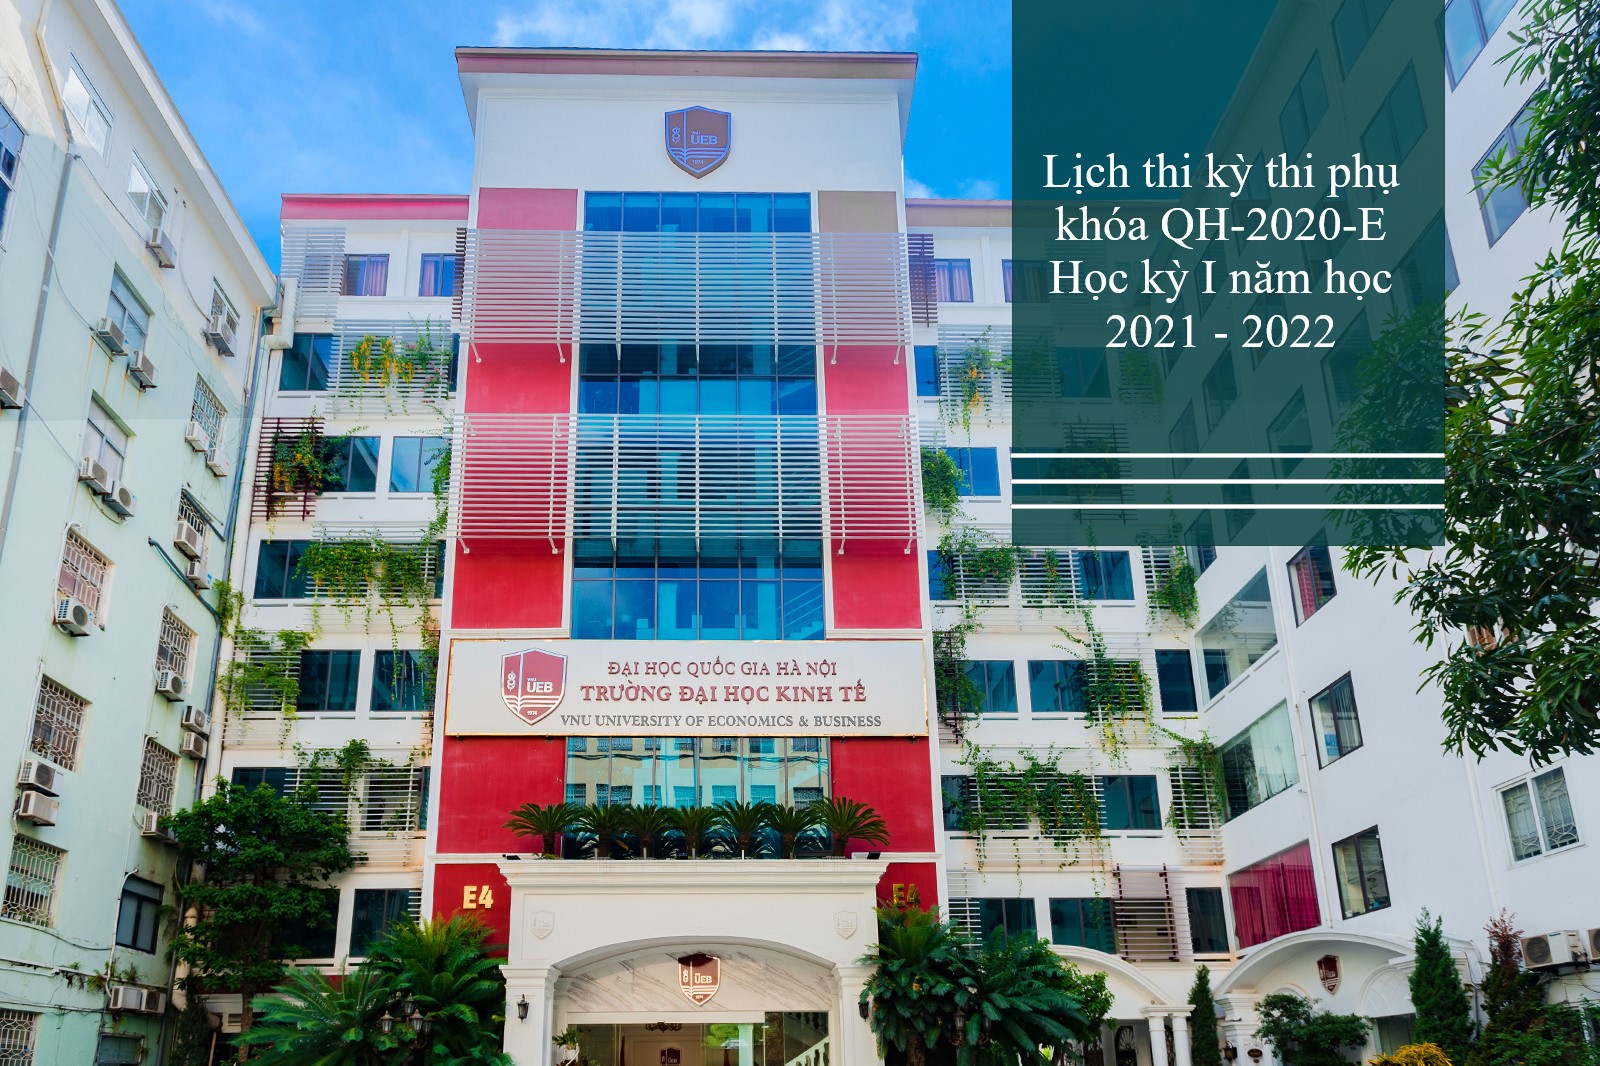 Lịch thi kỳ thi phụ khóa QH-2020-E học kỳ I năm học 2021 - 2022